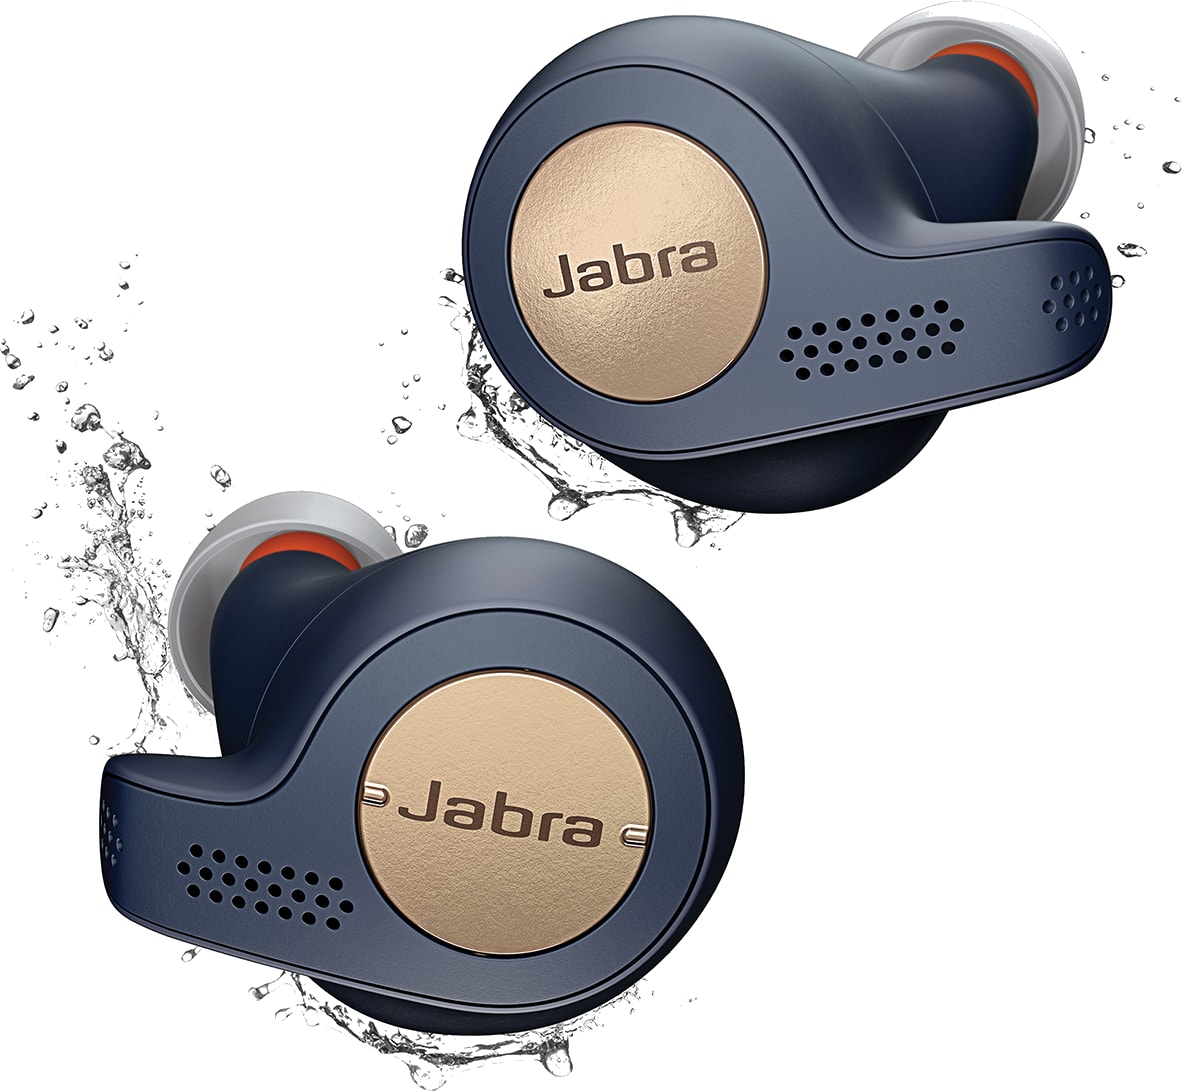 Jabra Elite Active 65t. Type product: Headset. Connectiviteitstechnologie: True Wireless Stereo (TWS), Bluetooth. Aanbevolen gebruik: Sporten. Frequentiebereik koptelefoon: 20 - 20